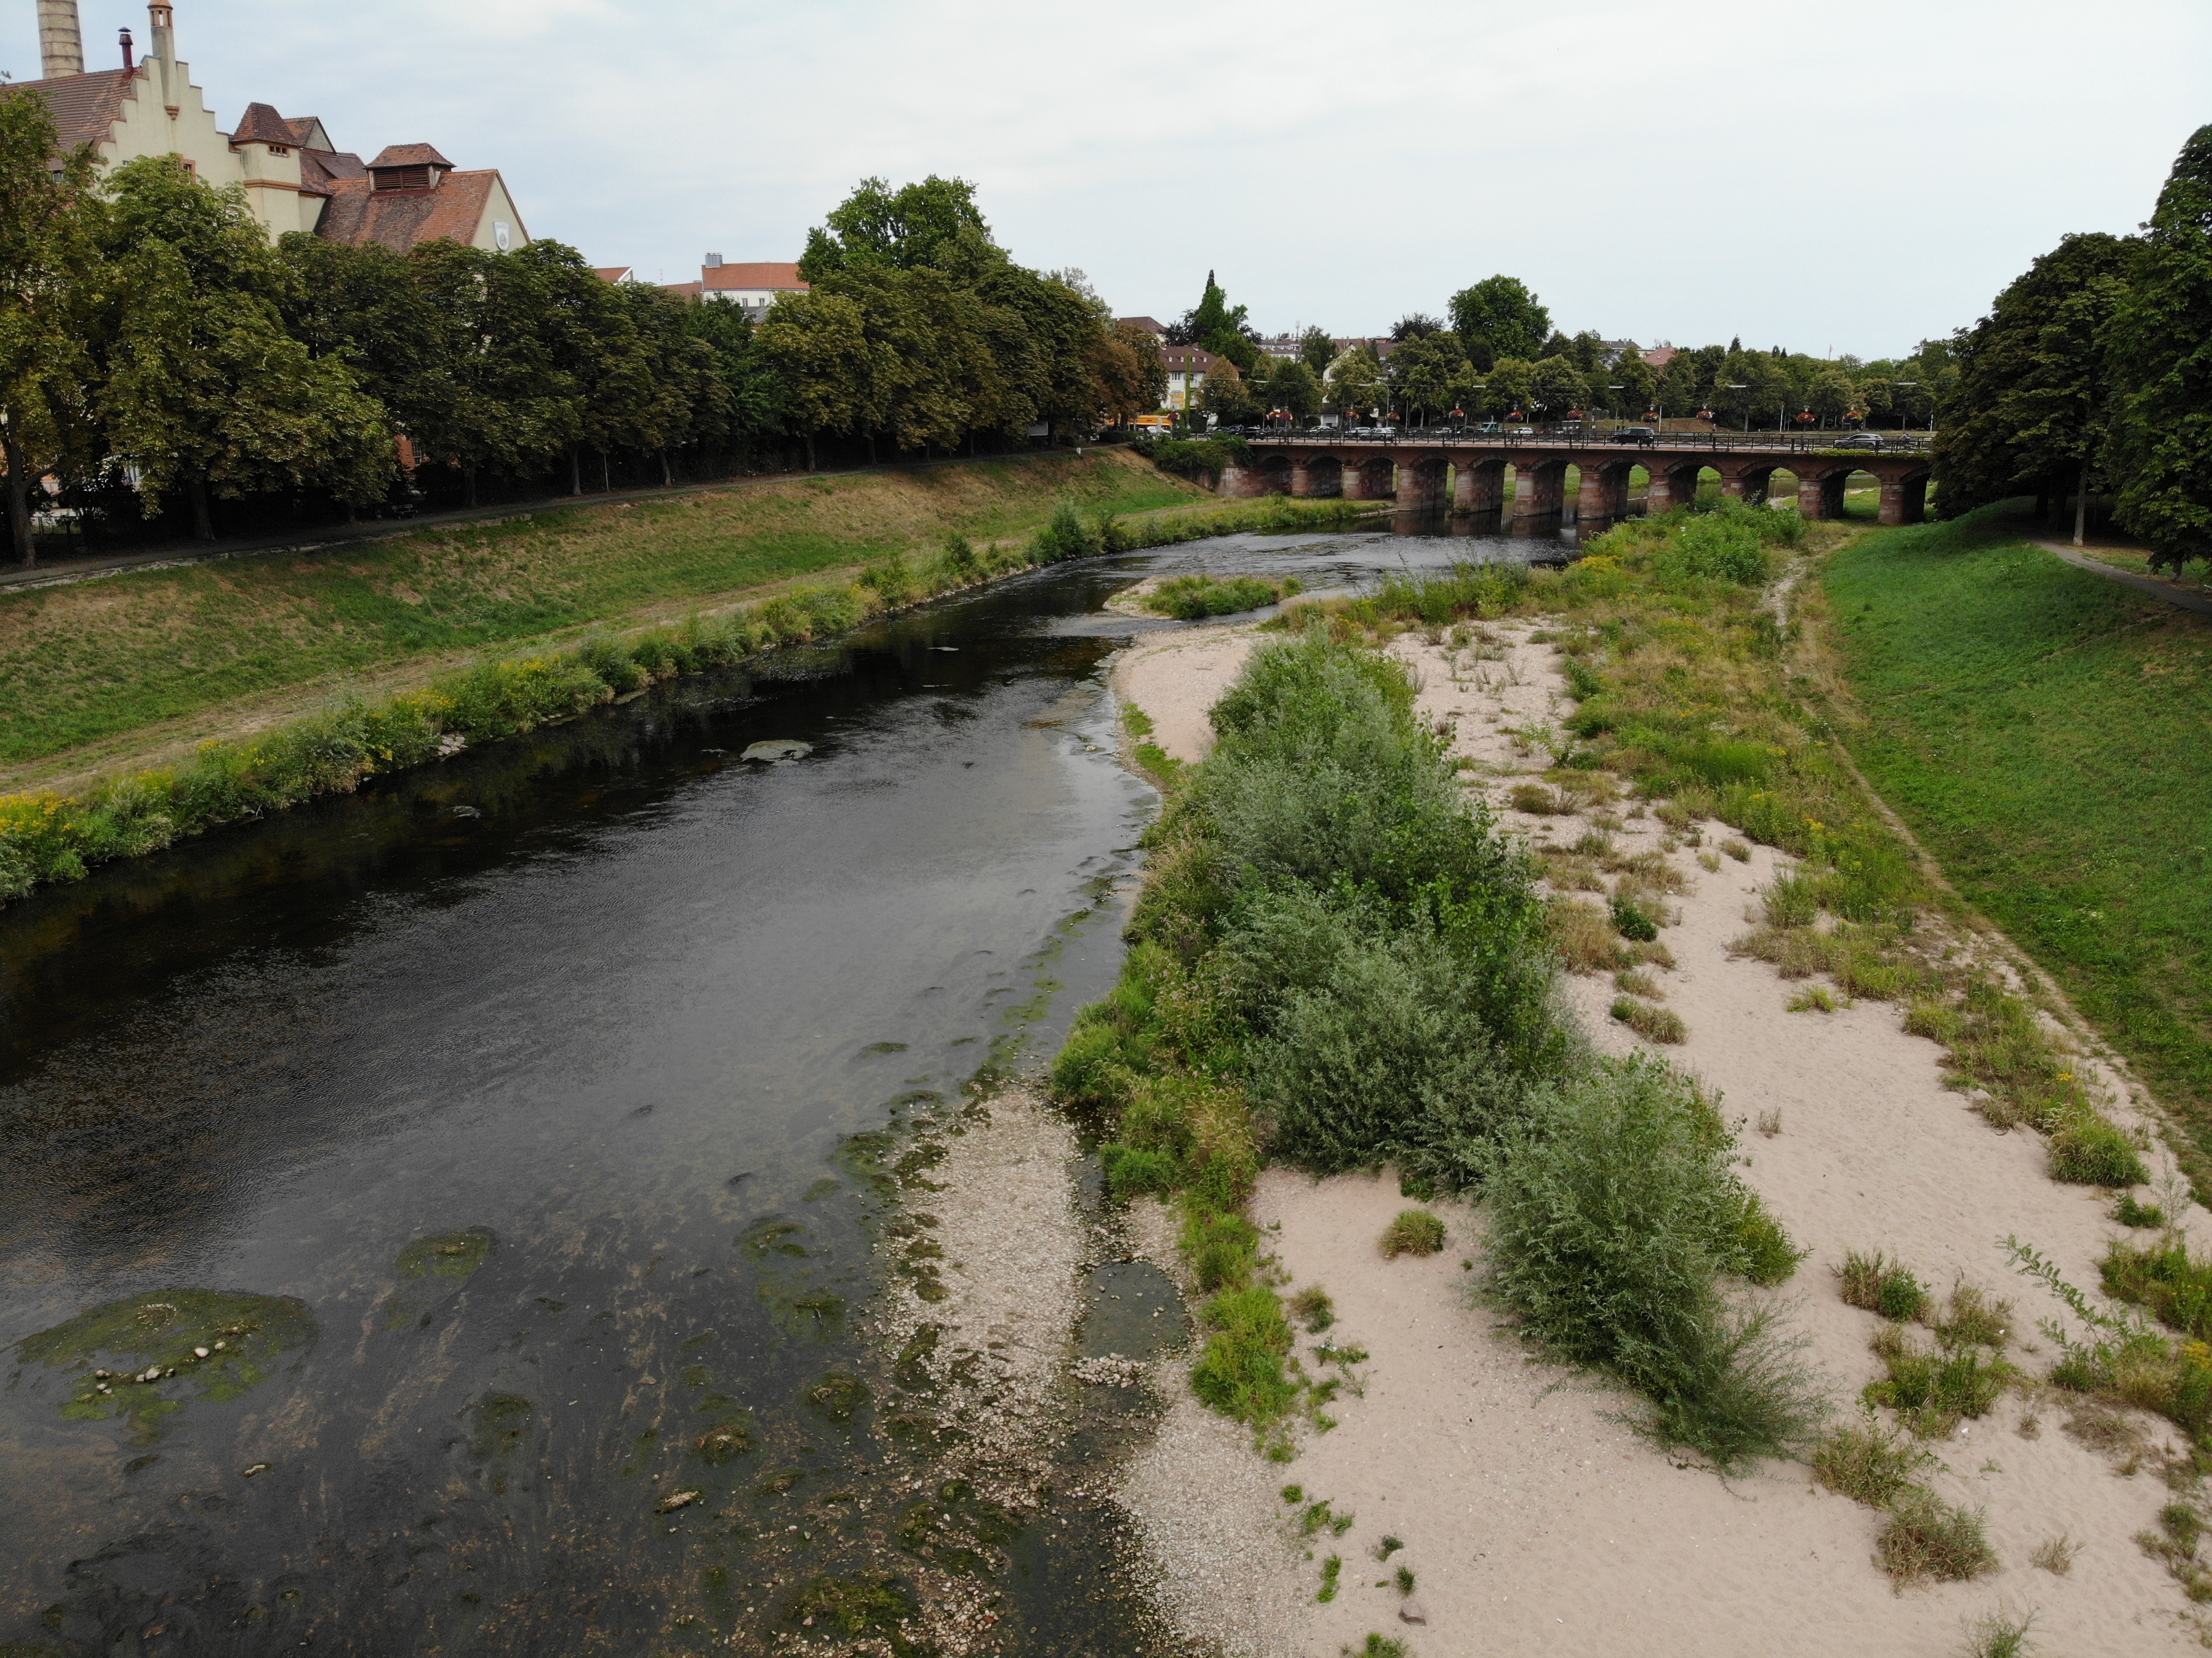 Foto: Die Murg in Rastatt nahe der Franzbrücke sechs Jahre nach Abschluss der Bauarbeiten. Das Gewässer hat sich natürlicherweise an einer Stelle deutlich verengt. Der einseitig kiesige Uferbereich ist bereits spärlich mit kleineren und größeren Büschen bewachsen.